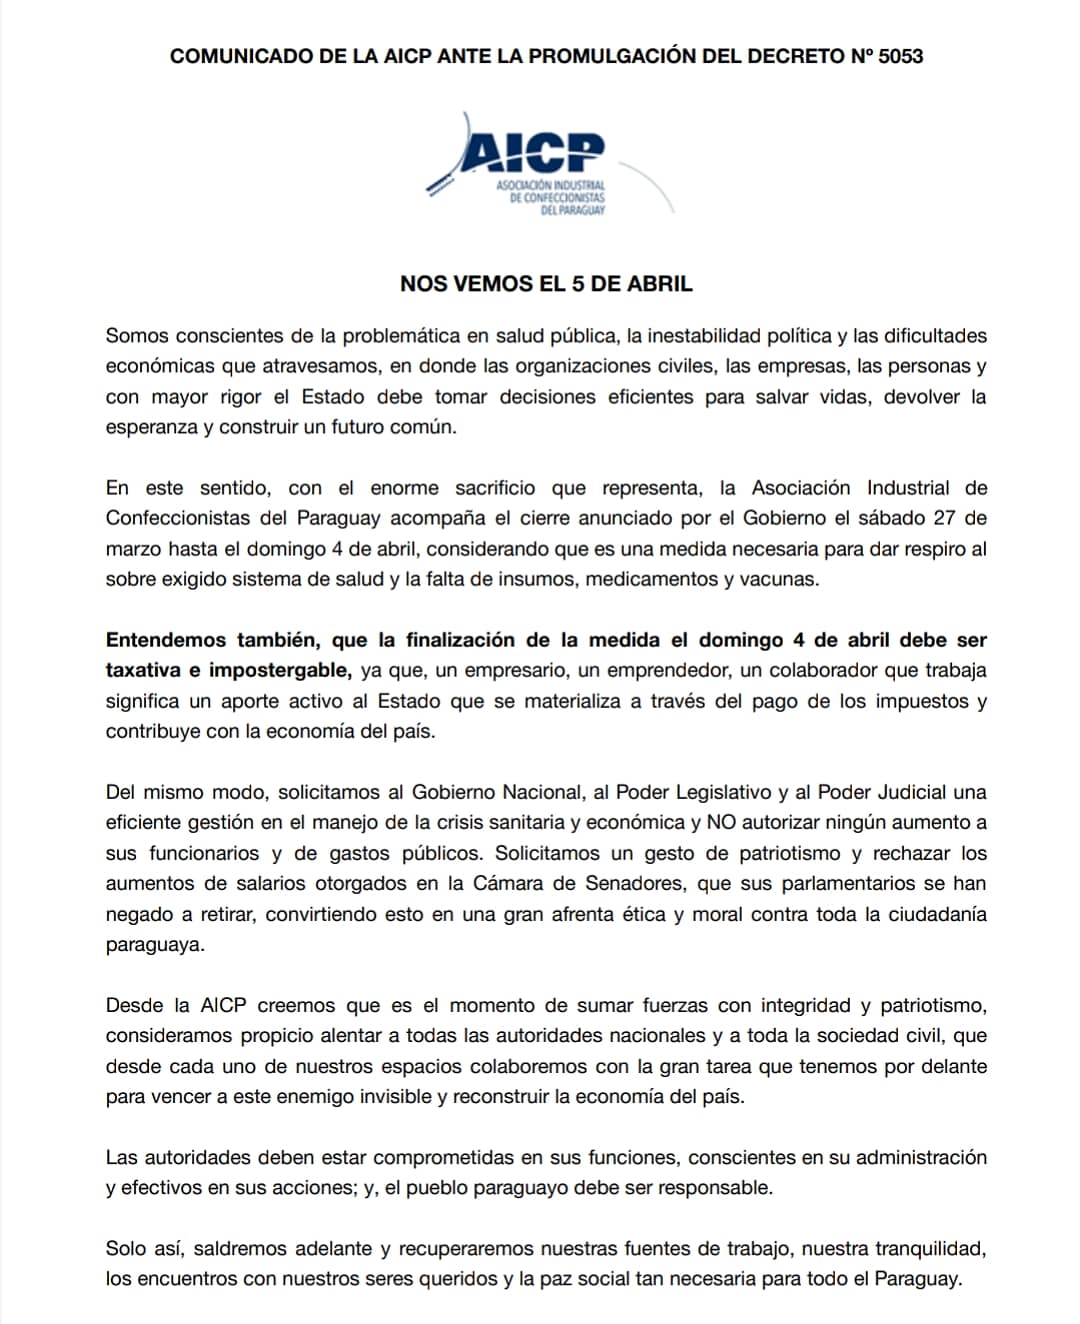 Comunicado de la Asociación Industrial de Confeccionistas del Paraguay (AICP)